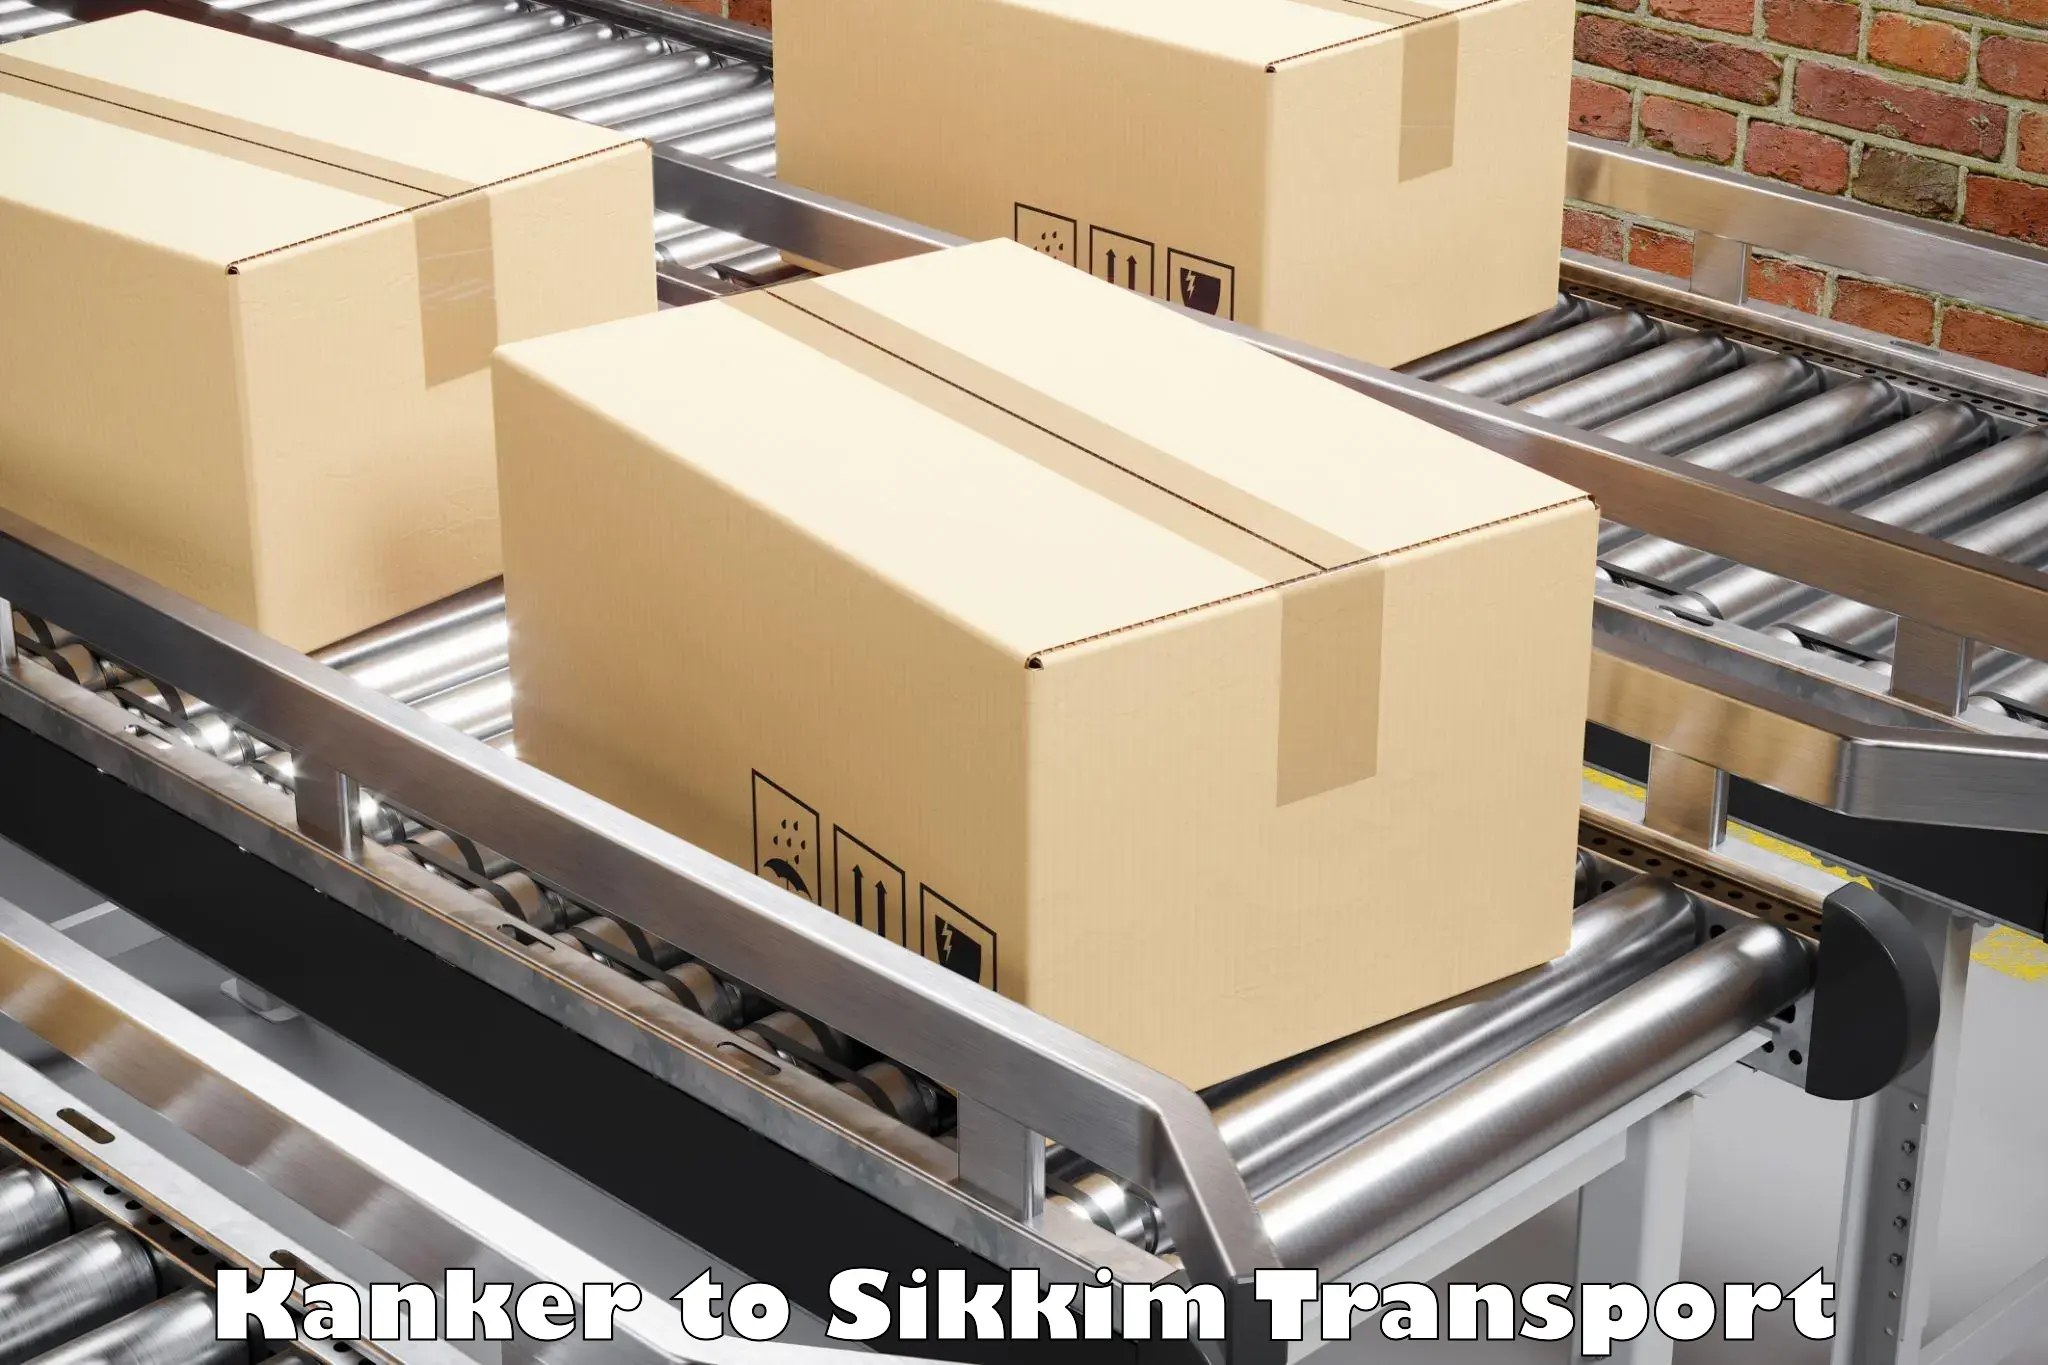 Shipping partner Kanker to East Sikkim